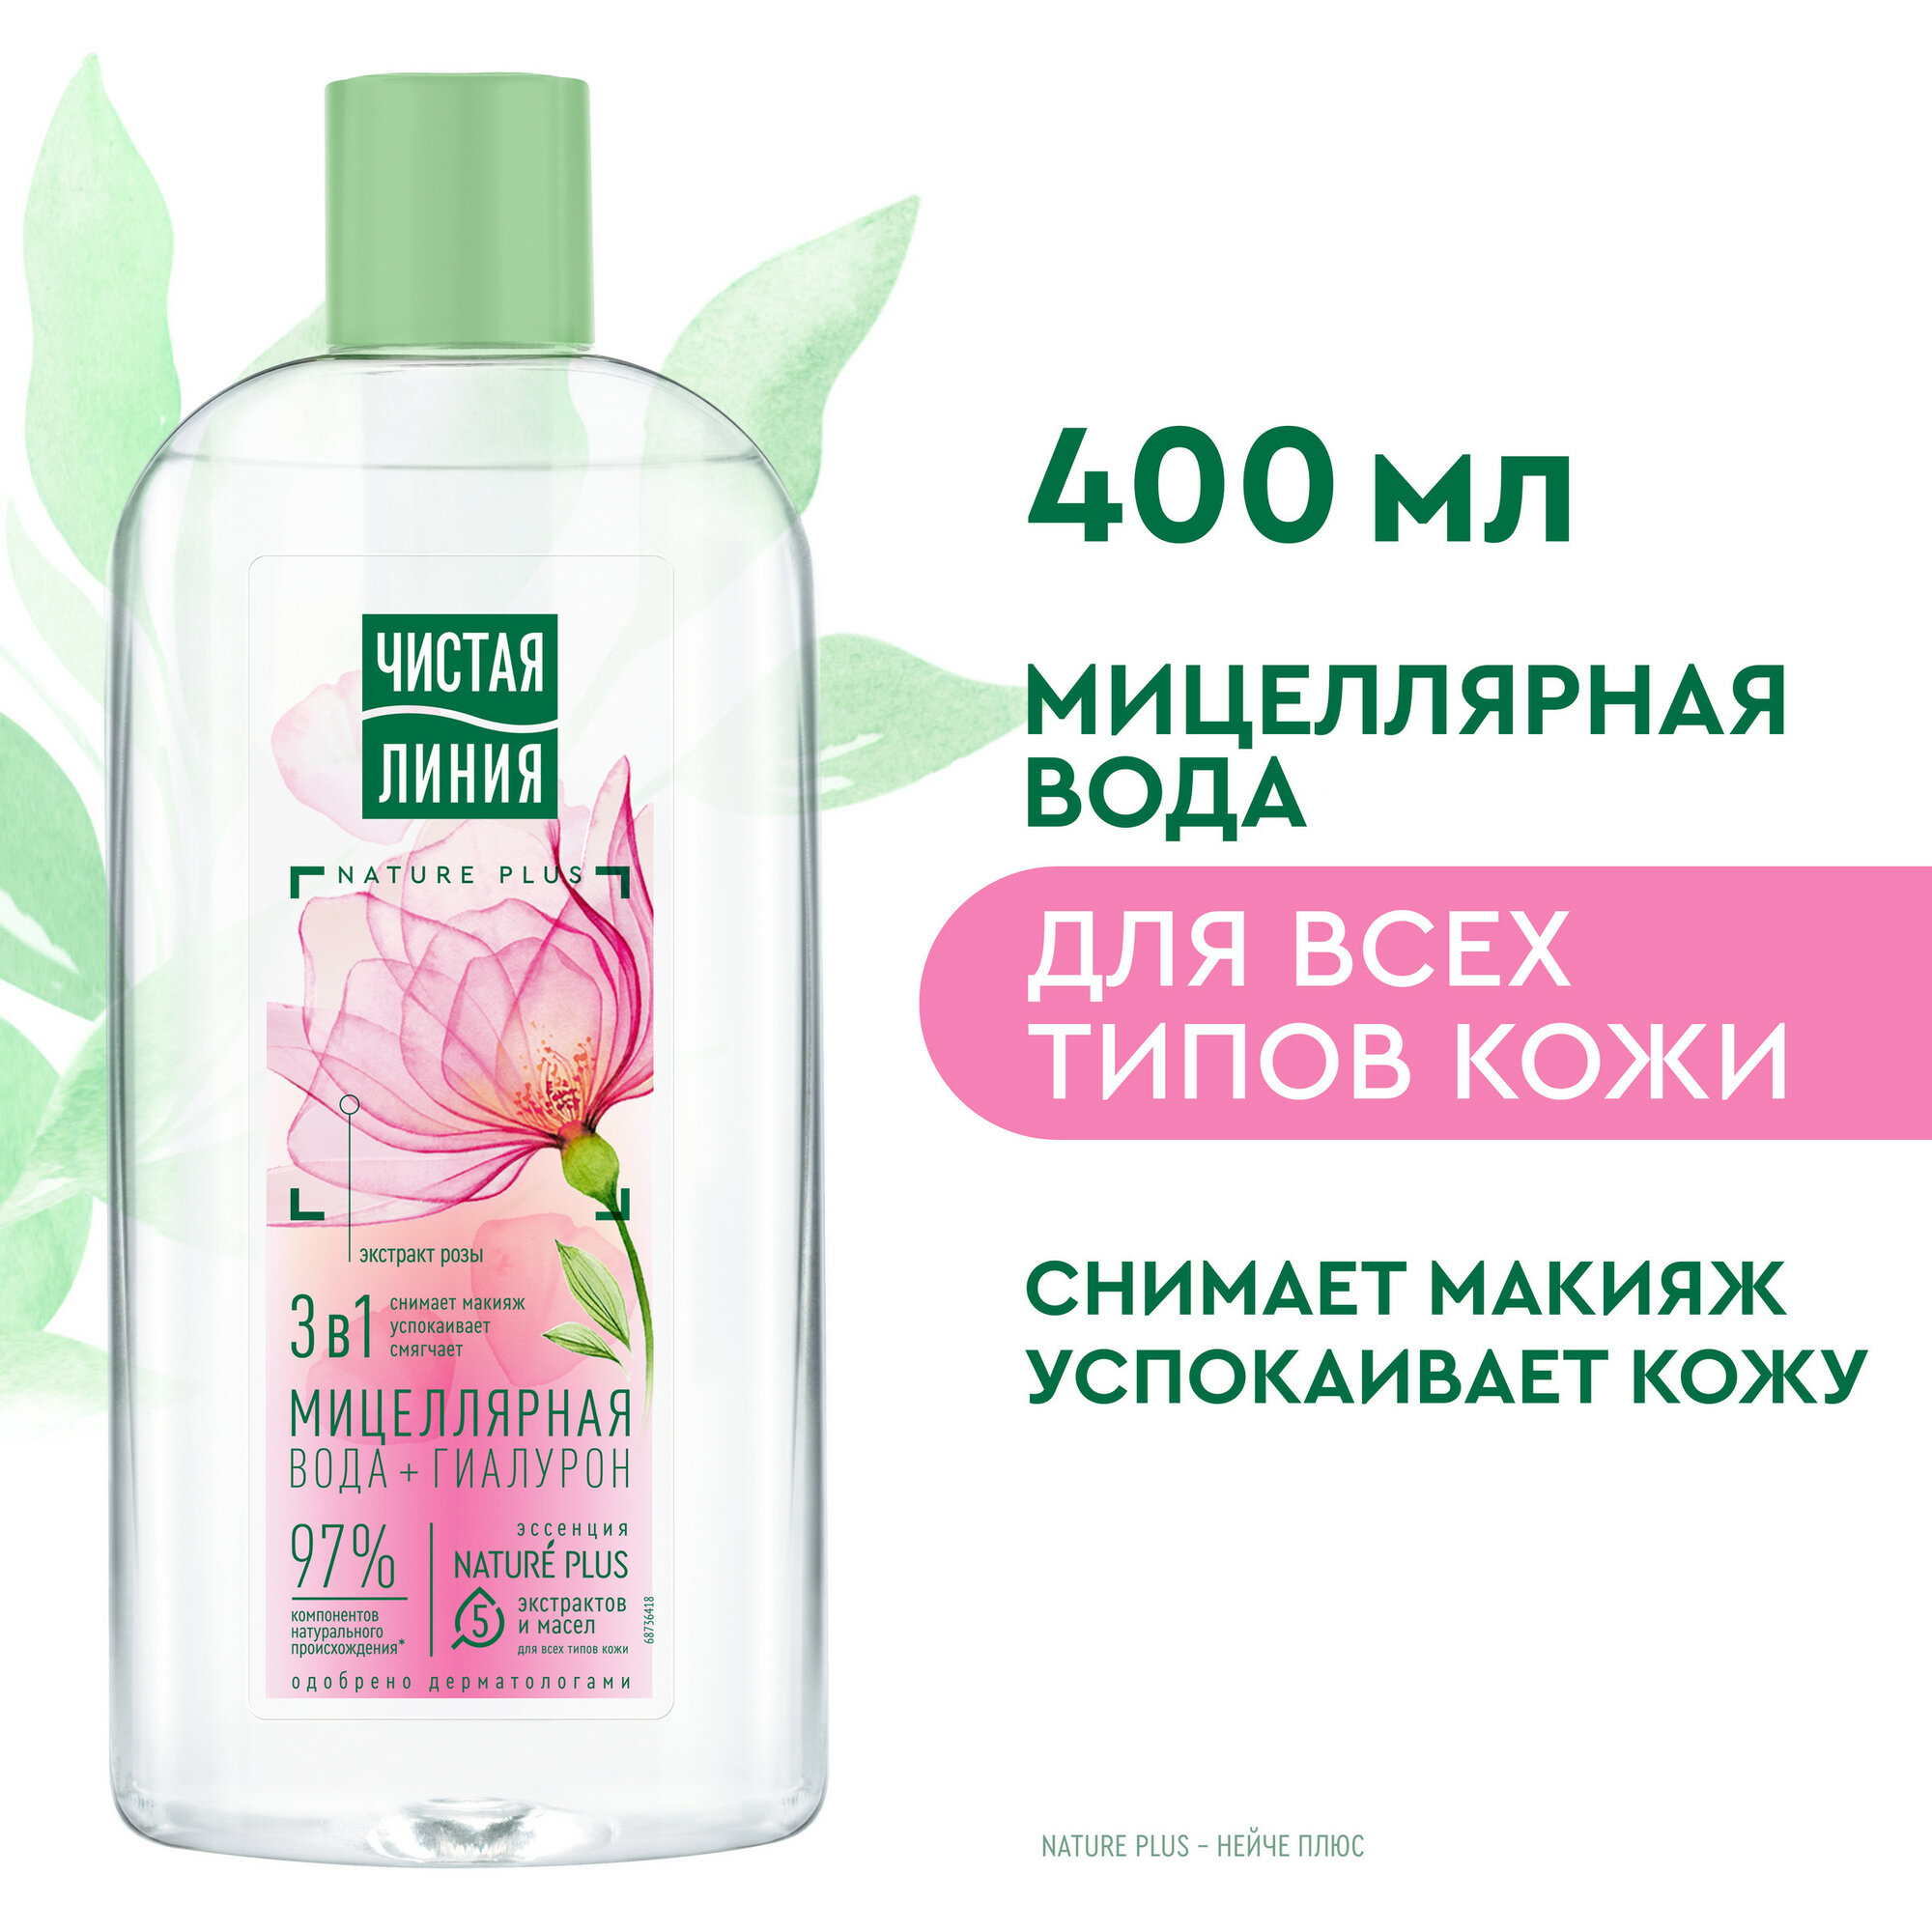 Чистая Линия мицеллярная вода 3в1 для всех типов кожи с гиалуроном и экстрактом розы, успокаивает кожу 400 мл